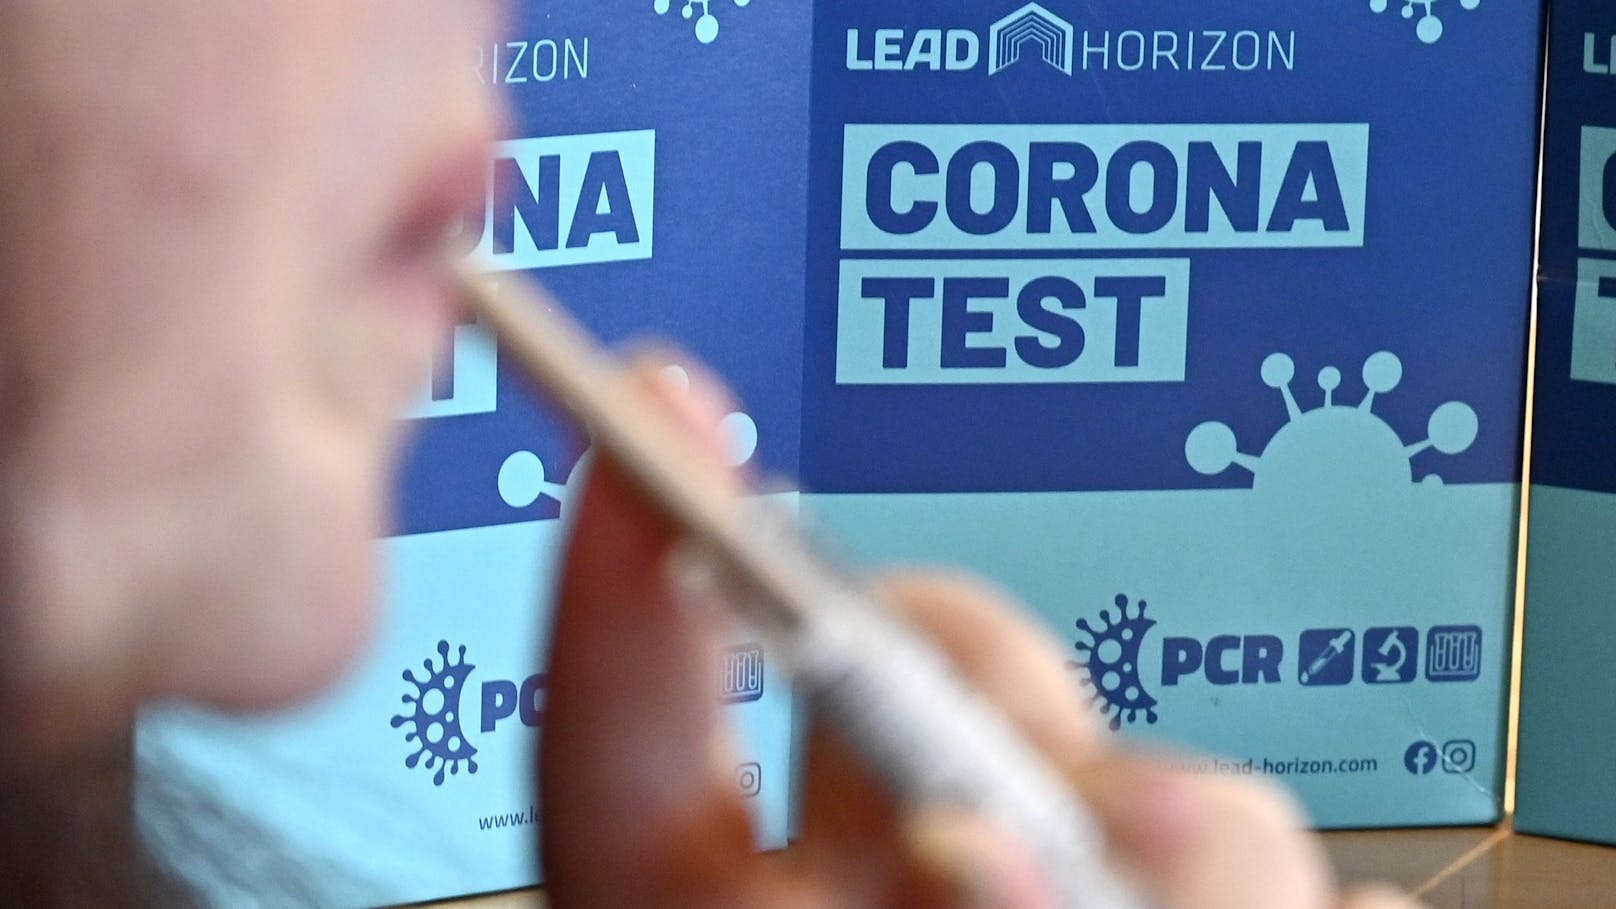 Laut dem&nbsp;Medizintechnikhersteller Lead Horizon stellen abgelaufene PCR-Tests kein Risiko dar, ganz im Gegenteil.